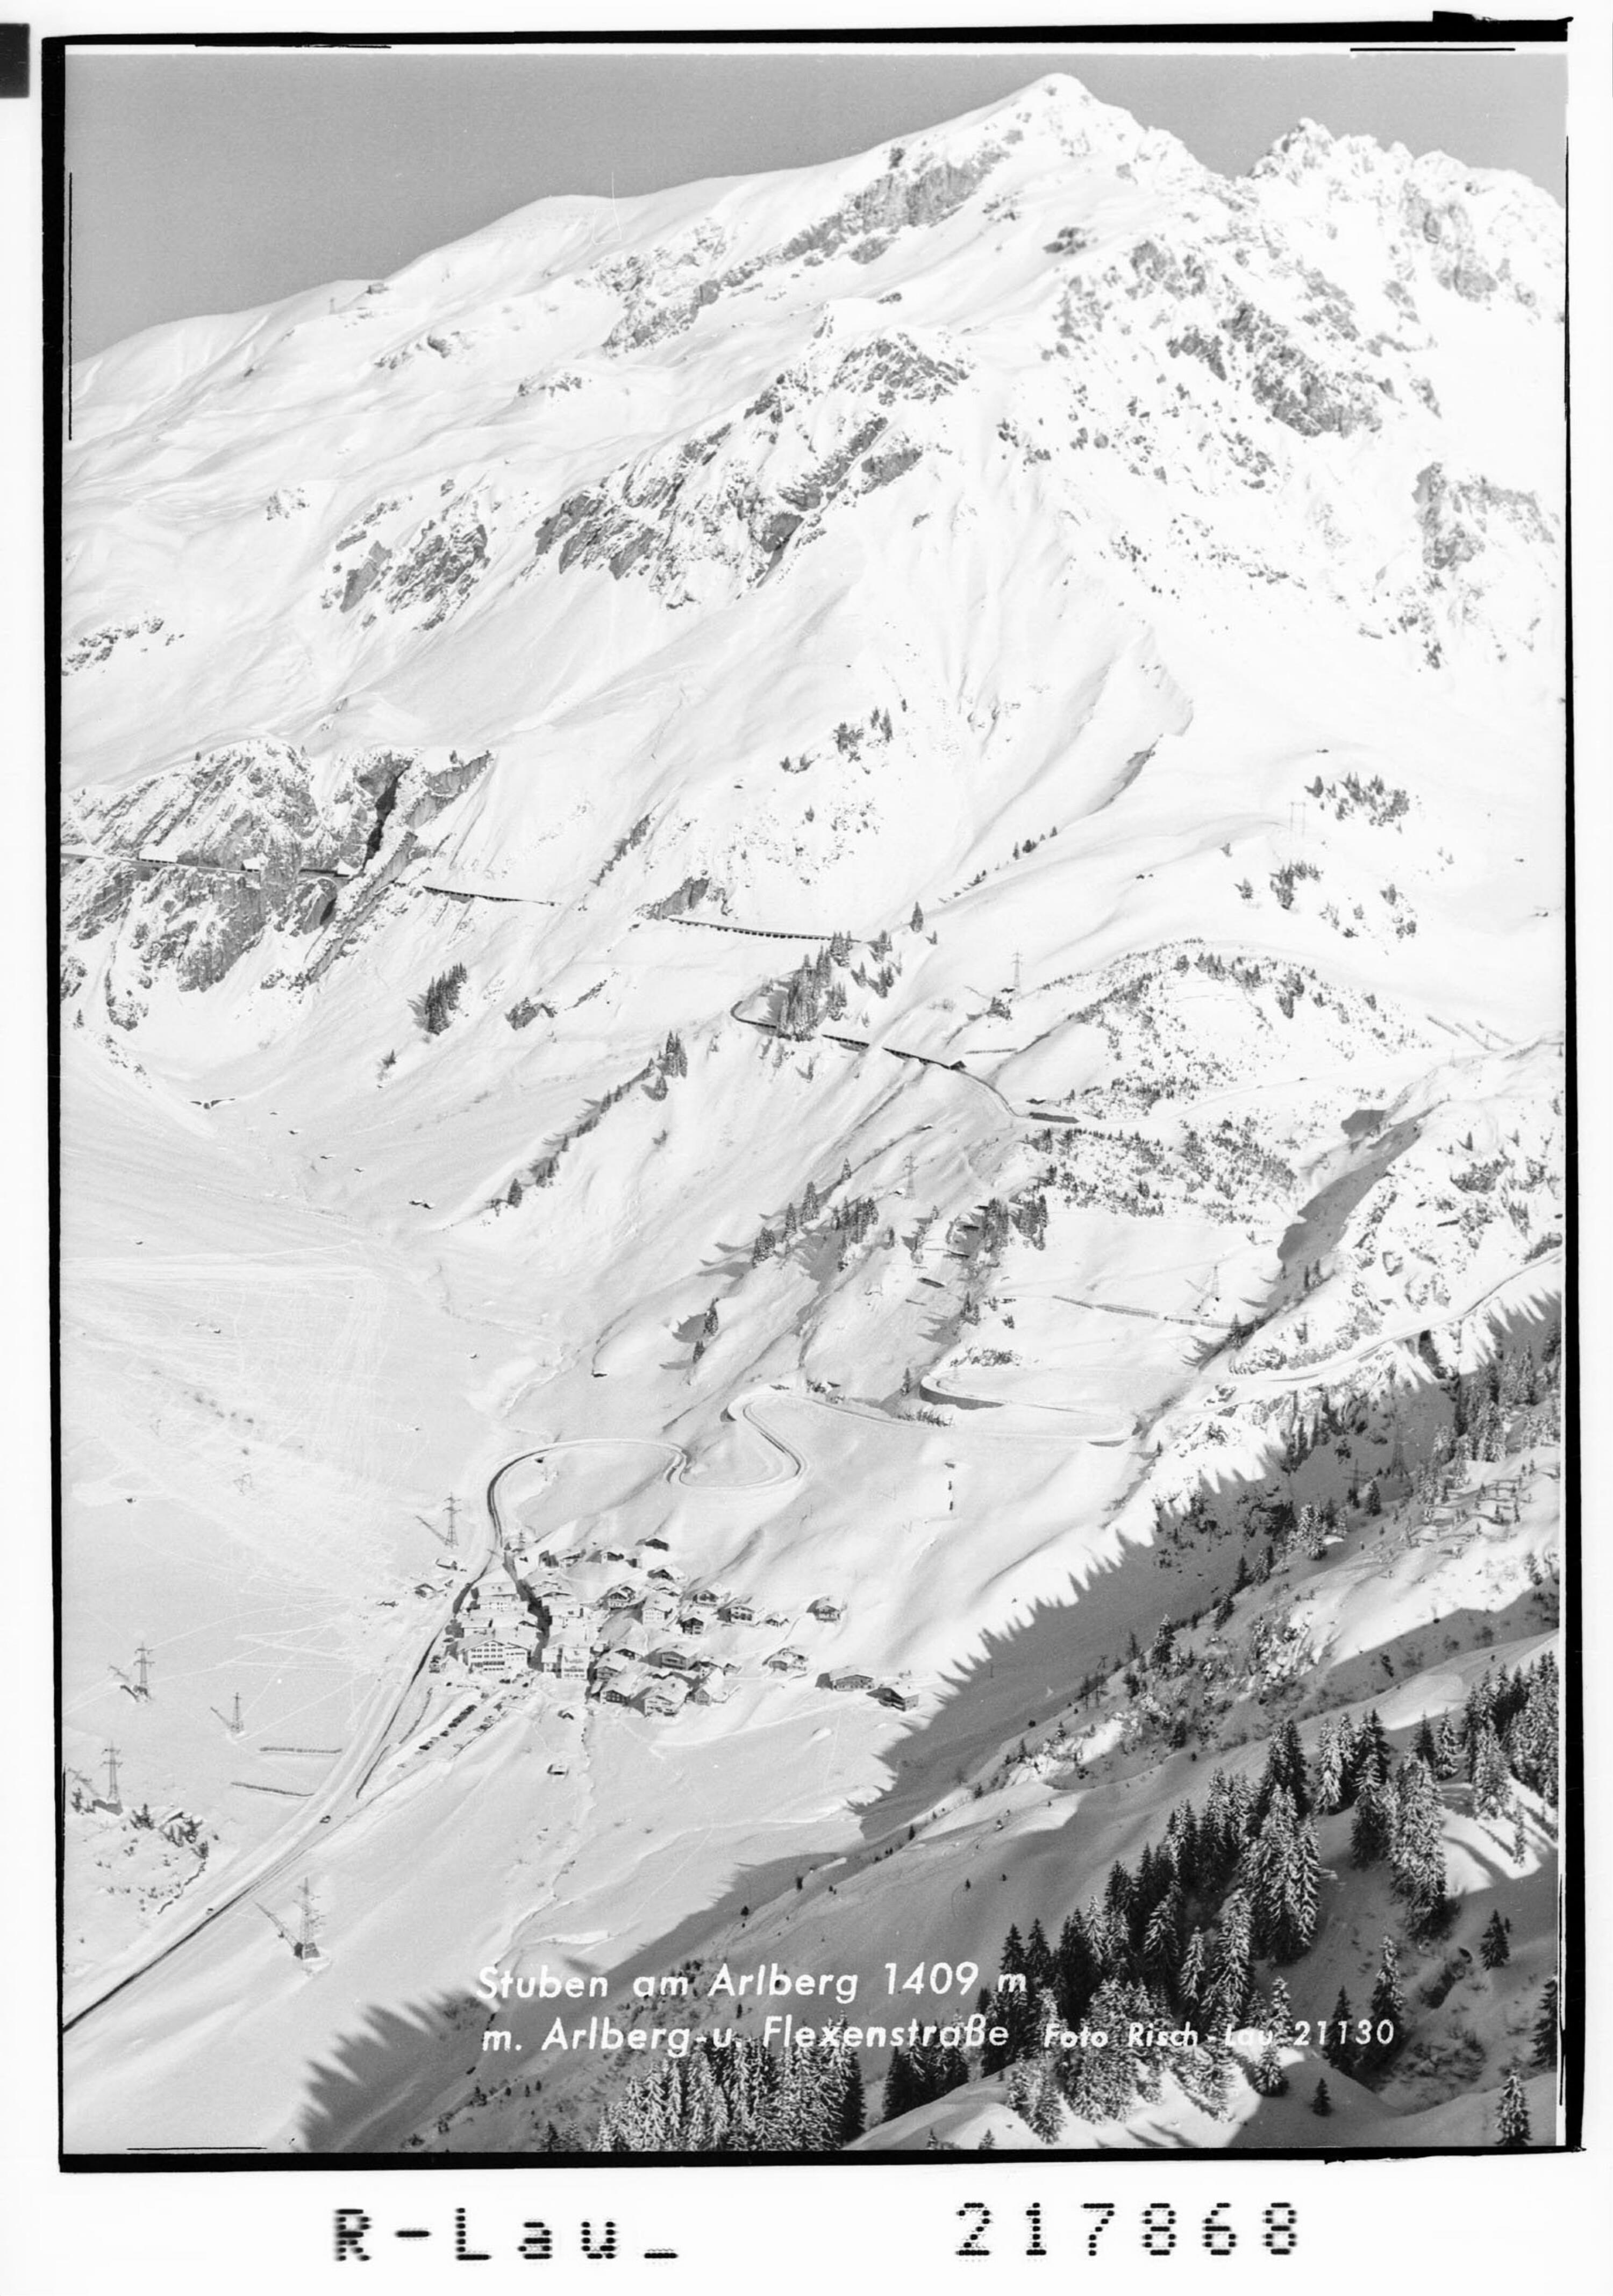 Stuben am Arlberg 1409 m mit Arlberg- und Flexenstrasse></div>


    <hr>
    <div class=